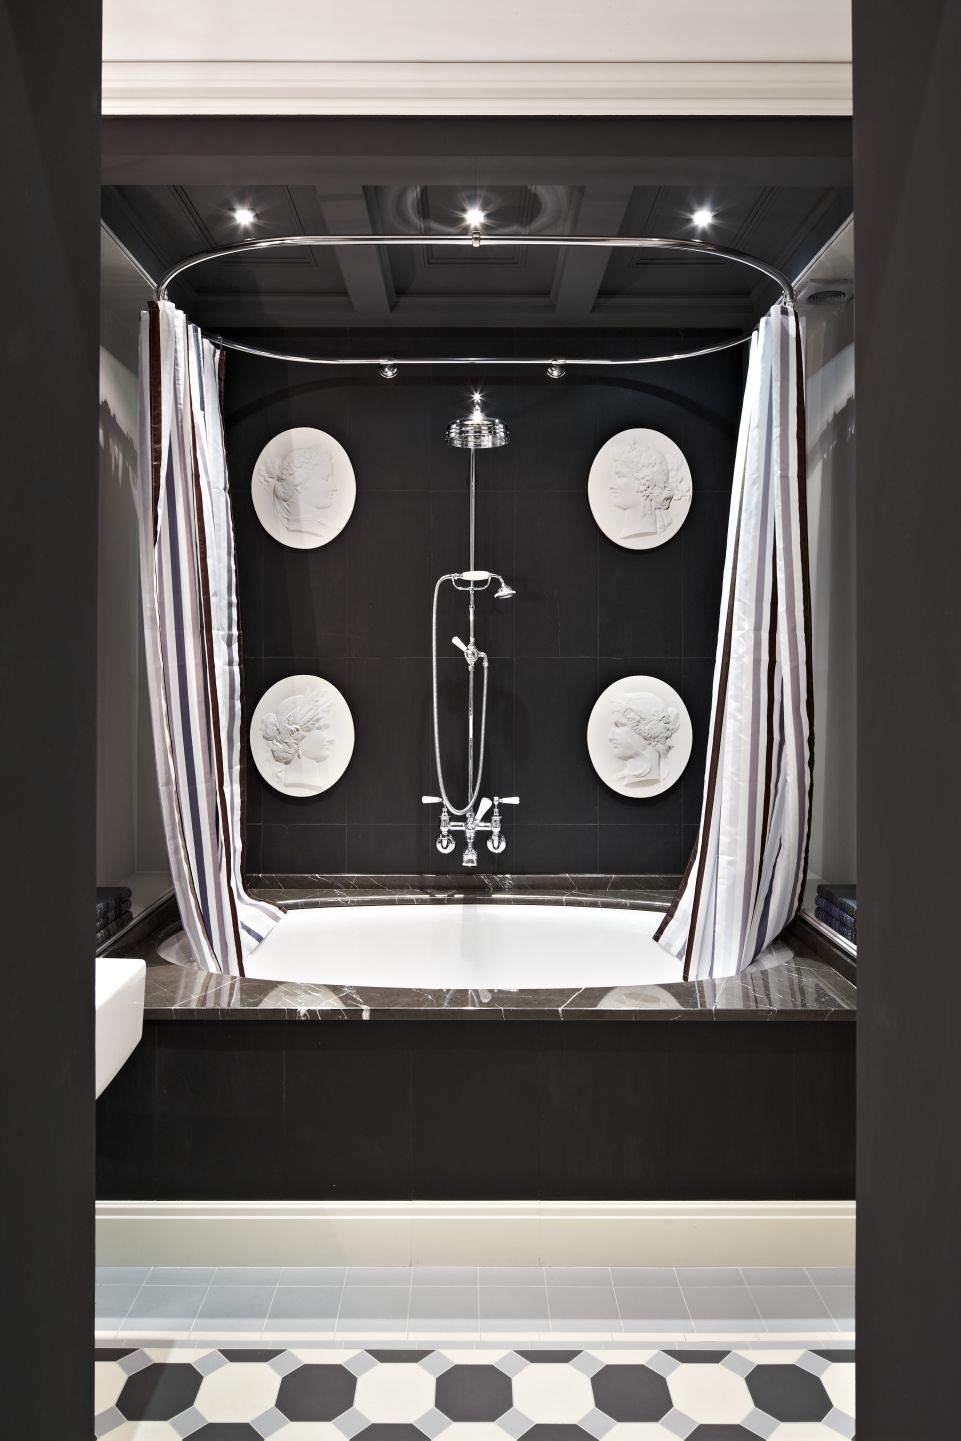 Какую плитку выбрать для маленькой ванной комнаты в году - фото-примеры дизайна, рекомендации